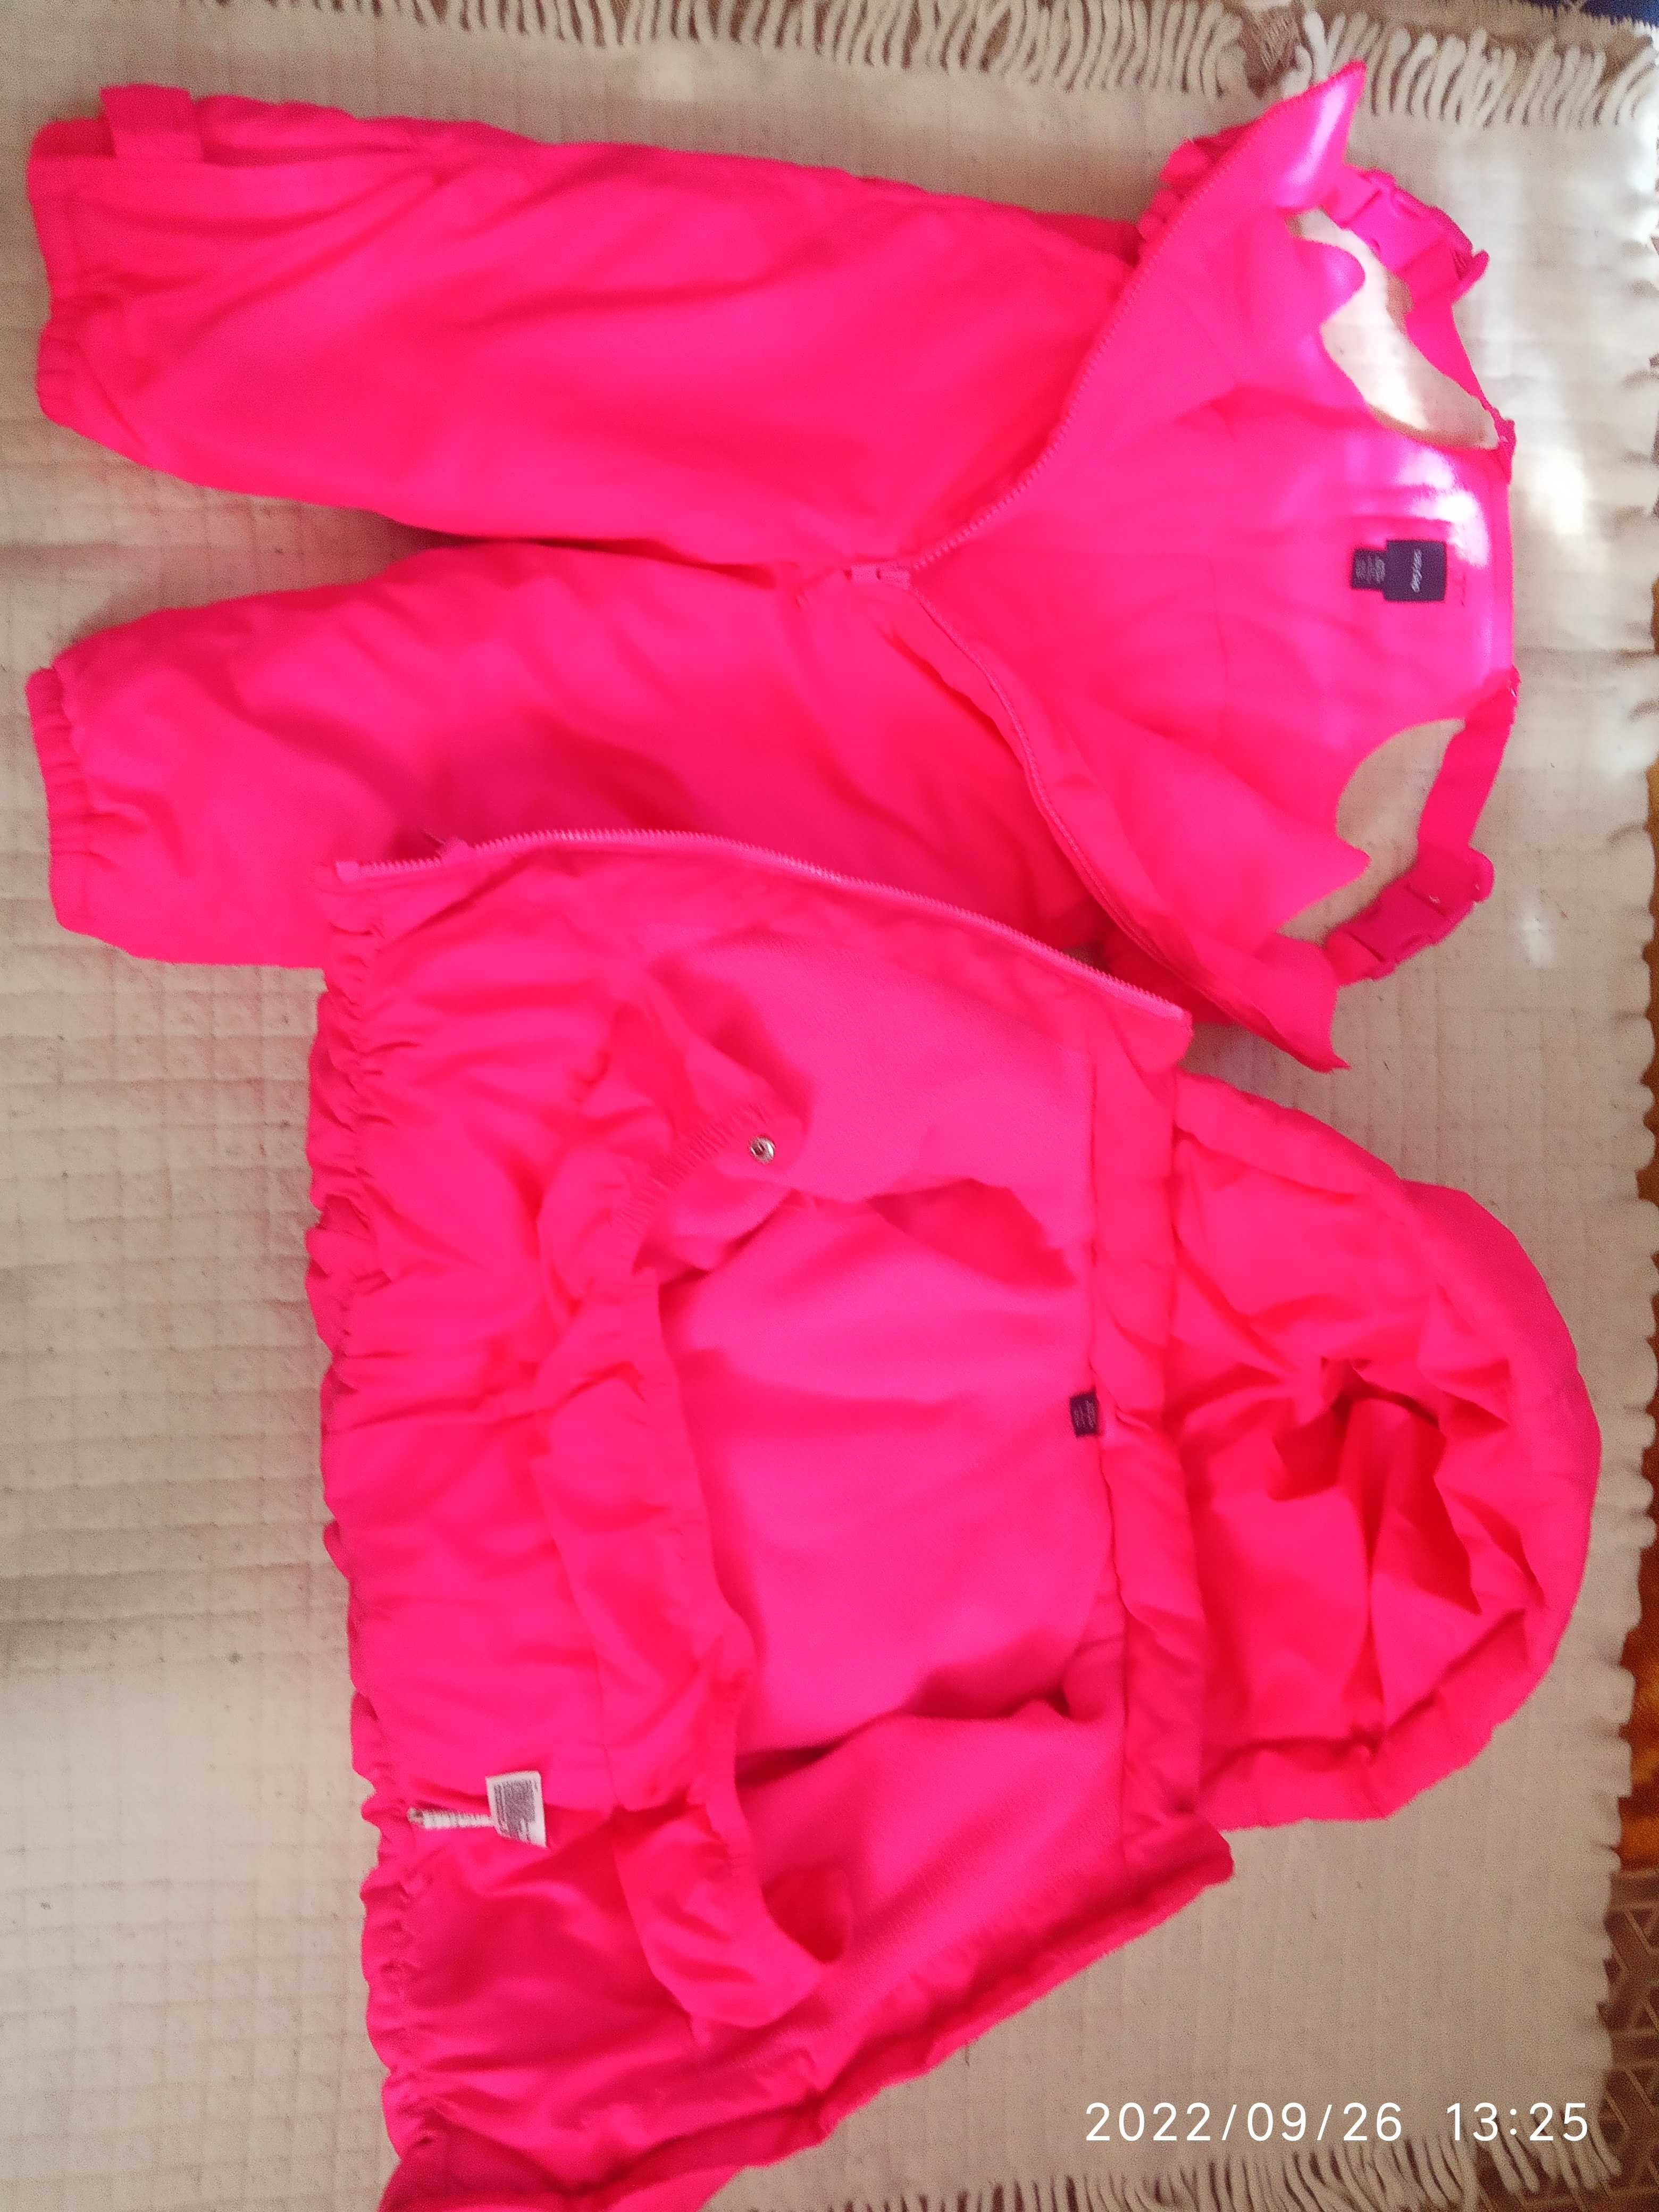 Комплект( куртка с комбинезоном). девочке 2-3 лет, фирменные